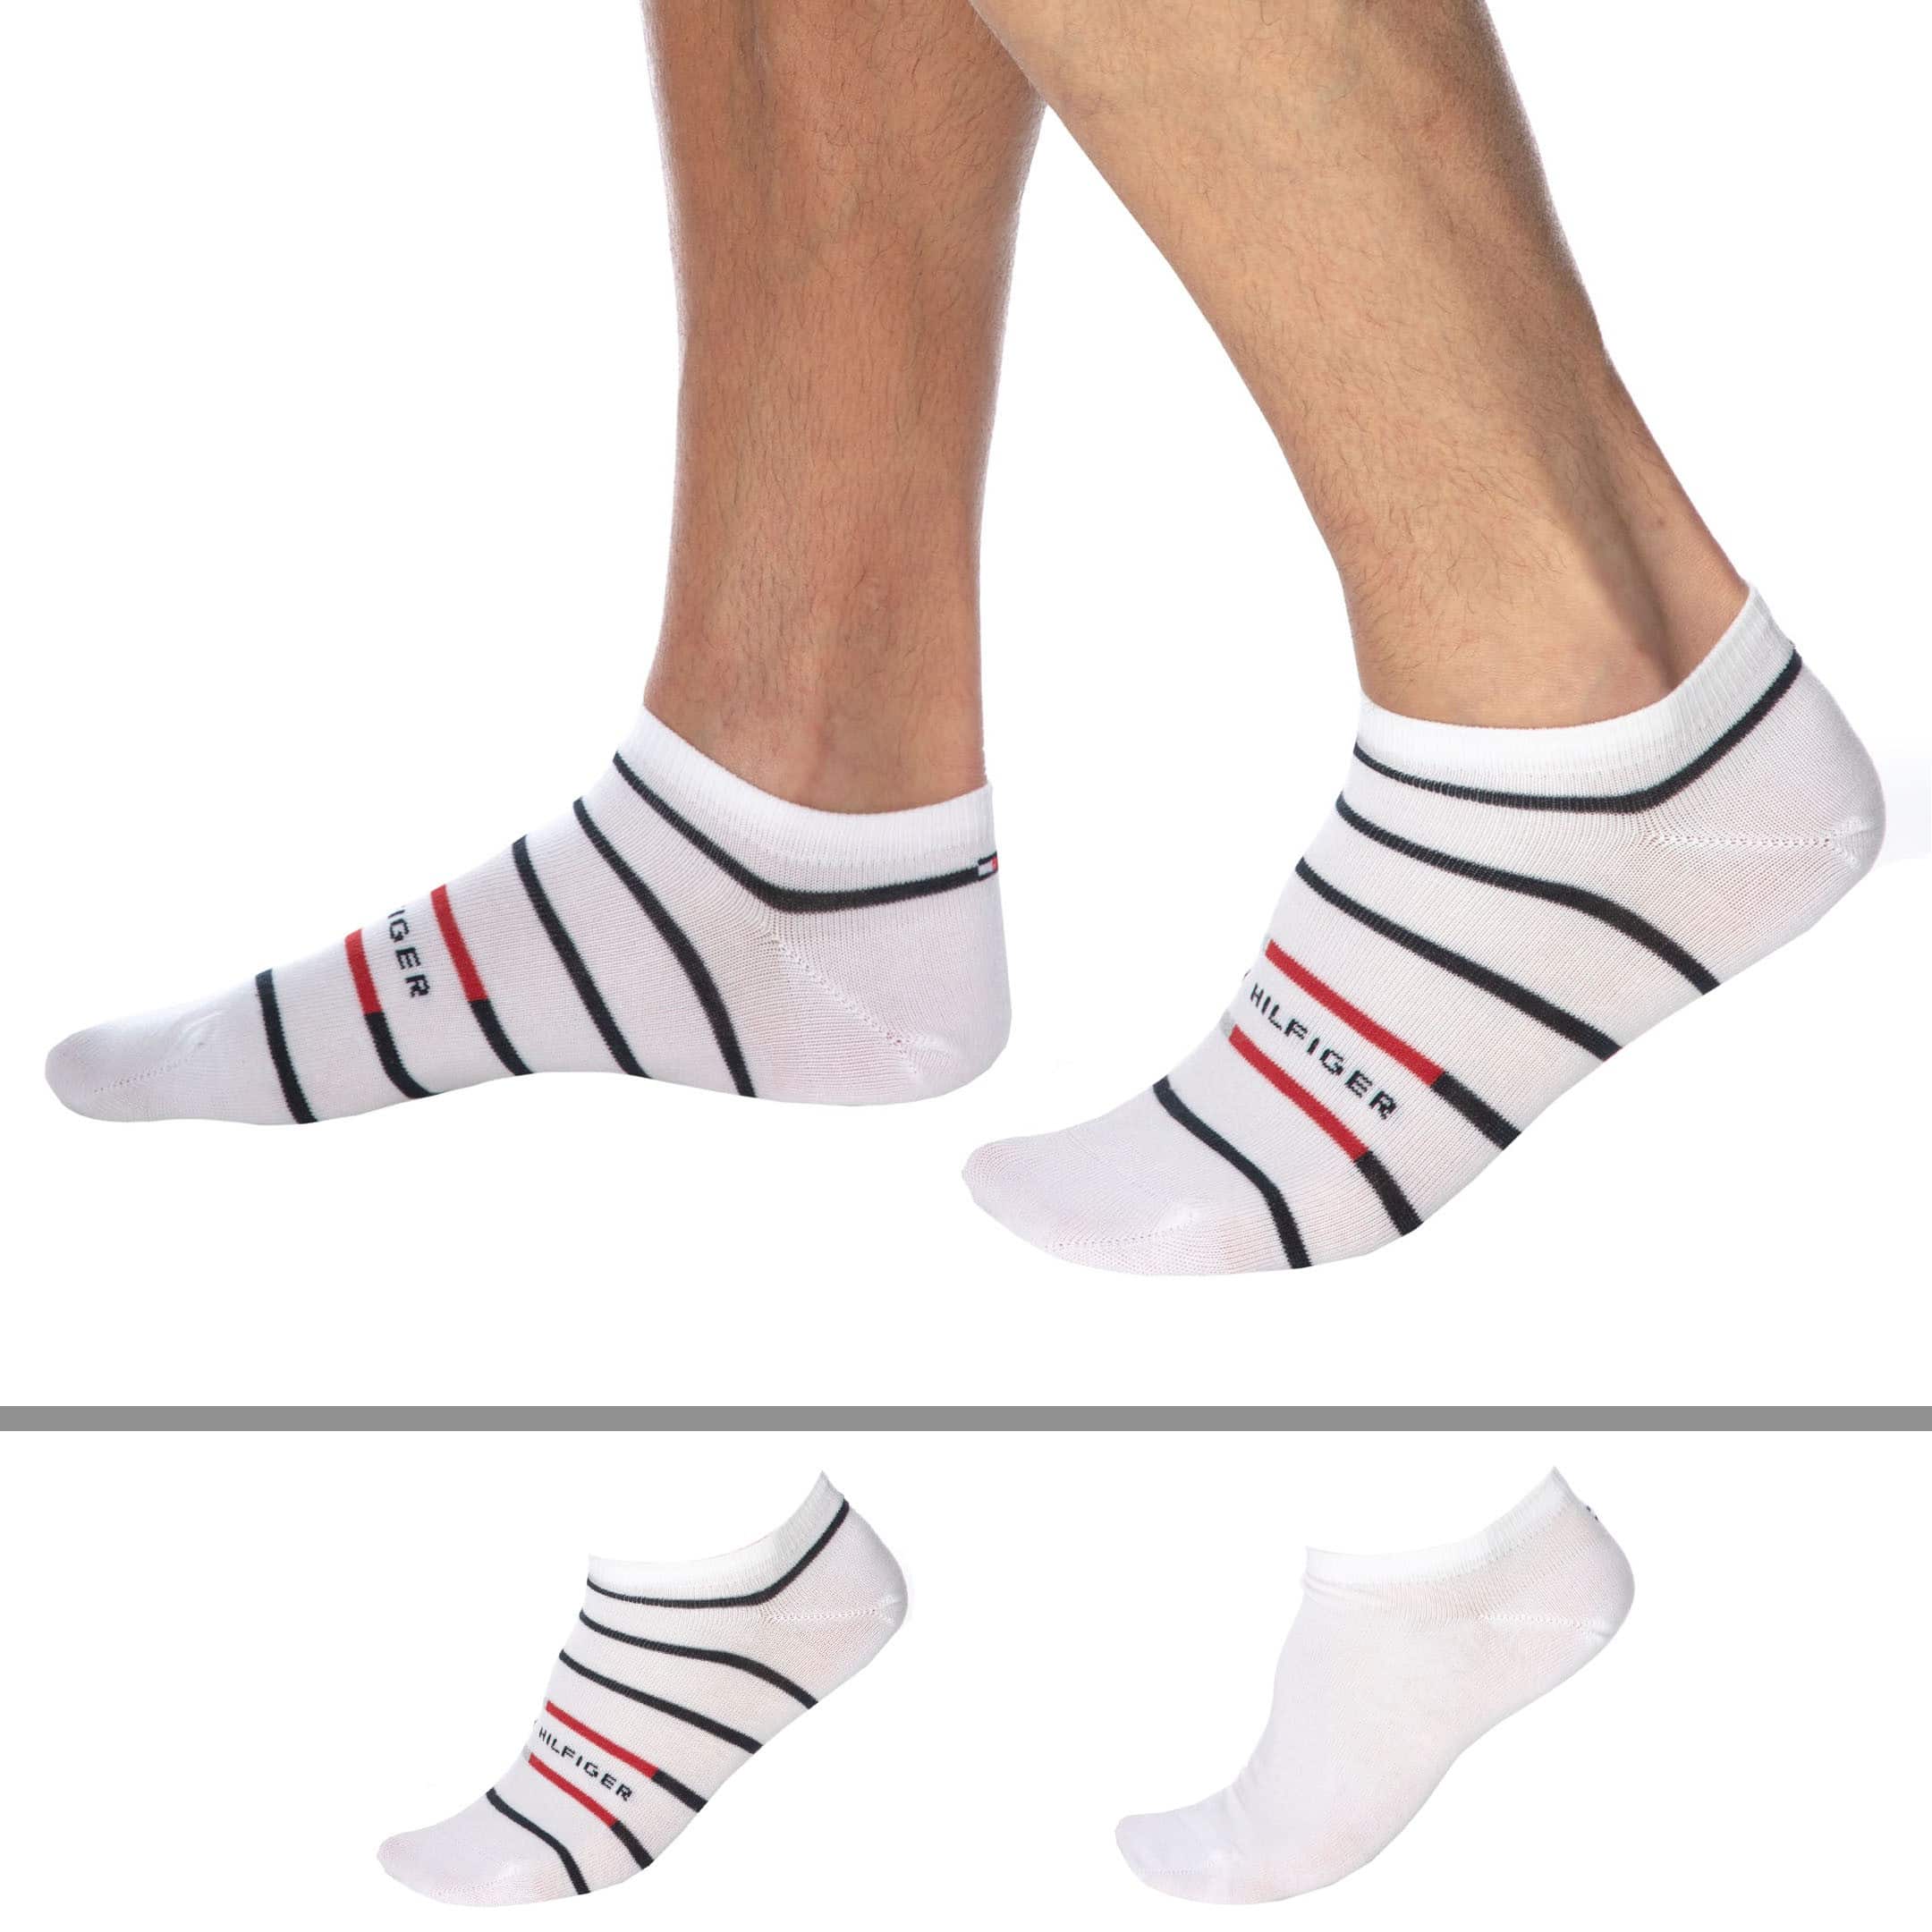 Tommy Hilfiger Boys Ankle Socks, Pack of 2